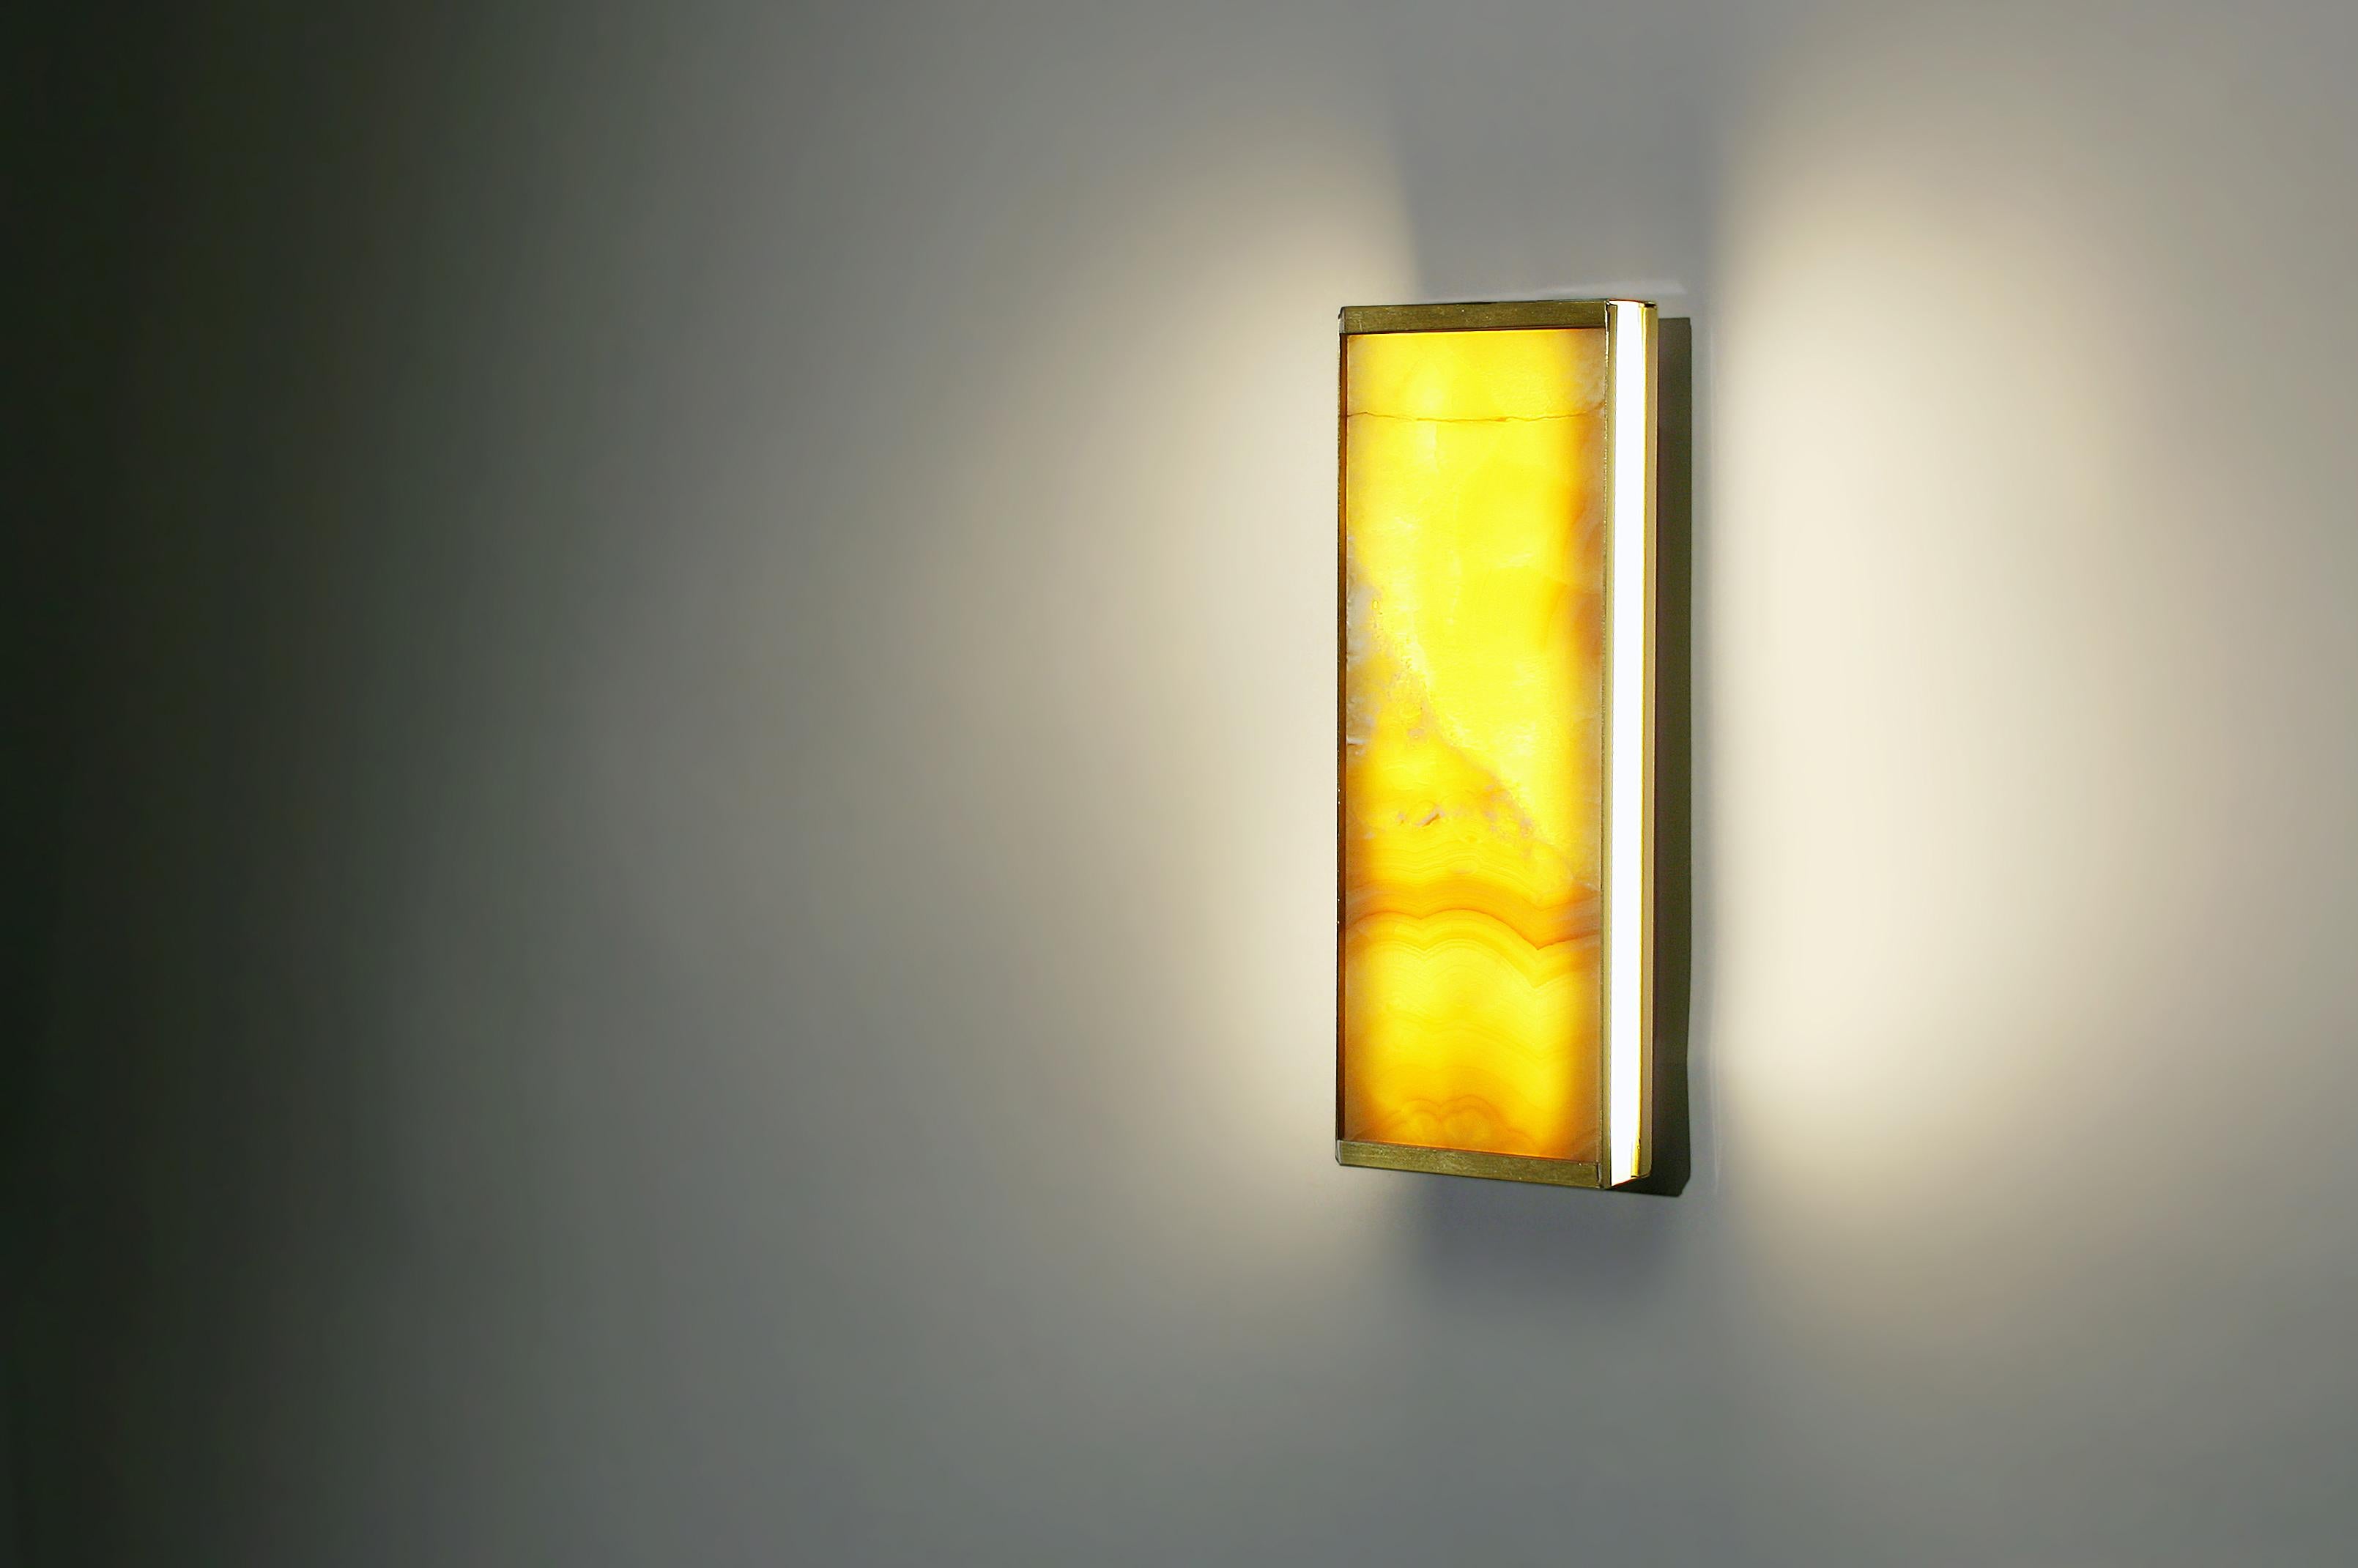 L'applique Tech short est un luminaire qui a été conçu pour fusionner le luminaire et l'abat-jour en une seule unité, en utilisant les propriétés translucides de l'onyx jaune veiné ultrafin pour créer un jeu d'ombre et de lumière qui met en valeur